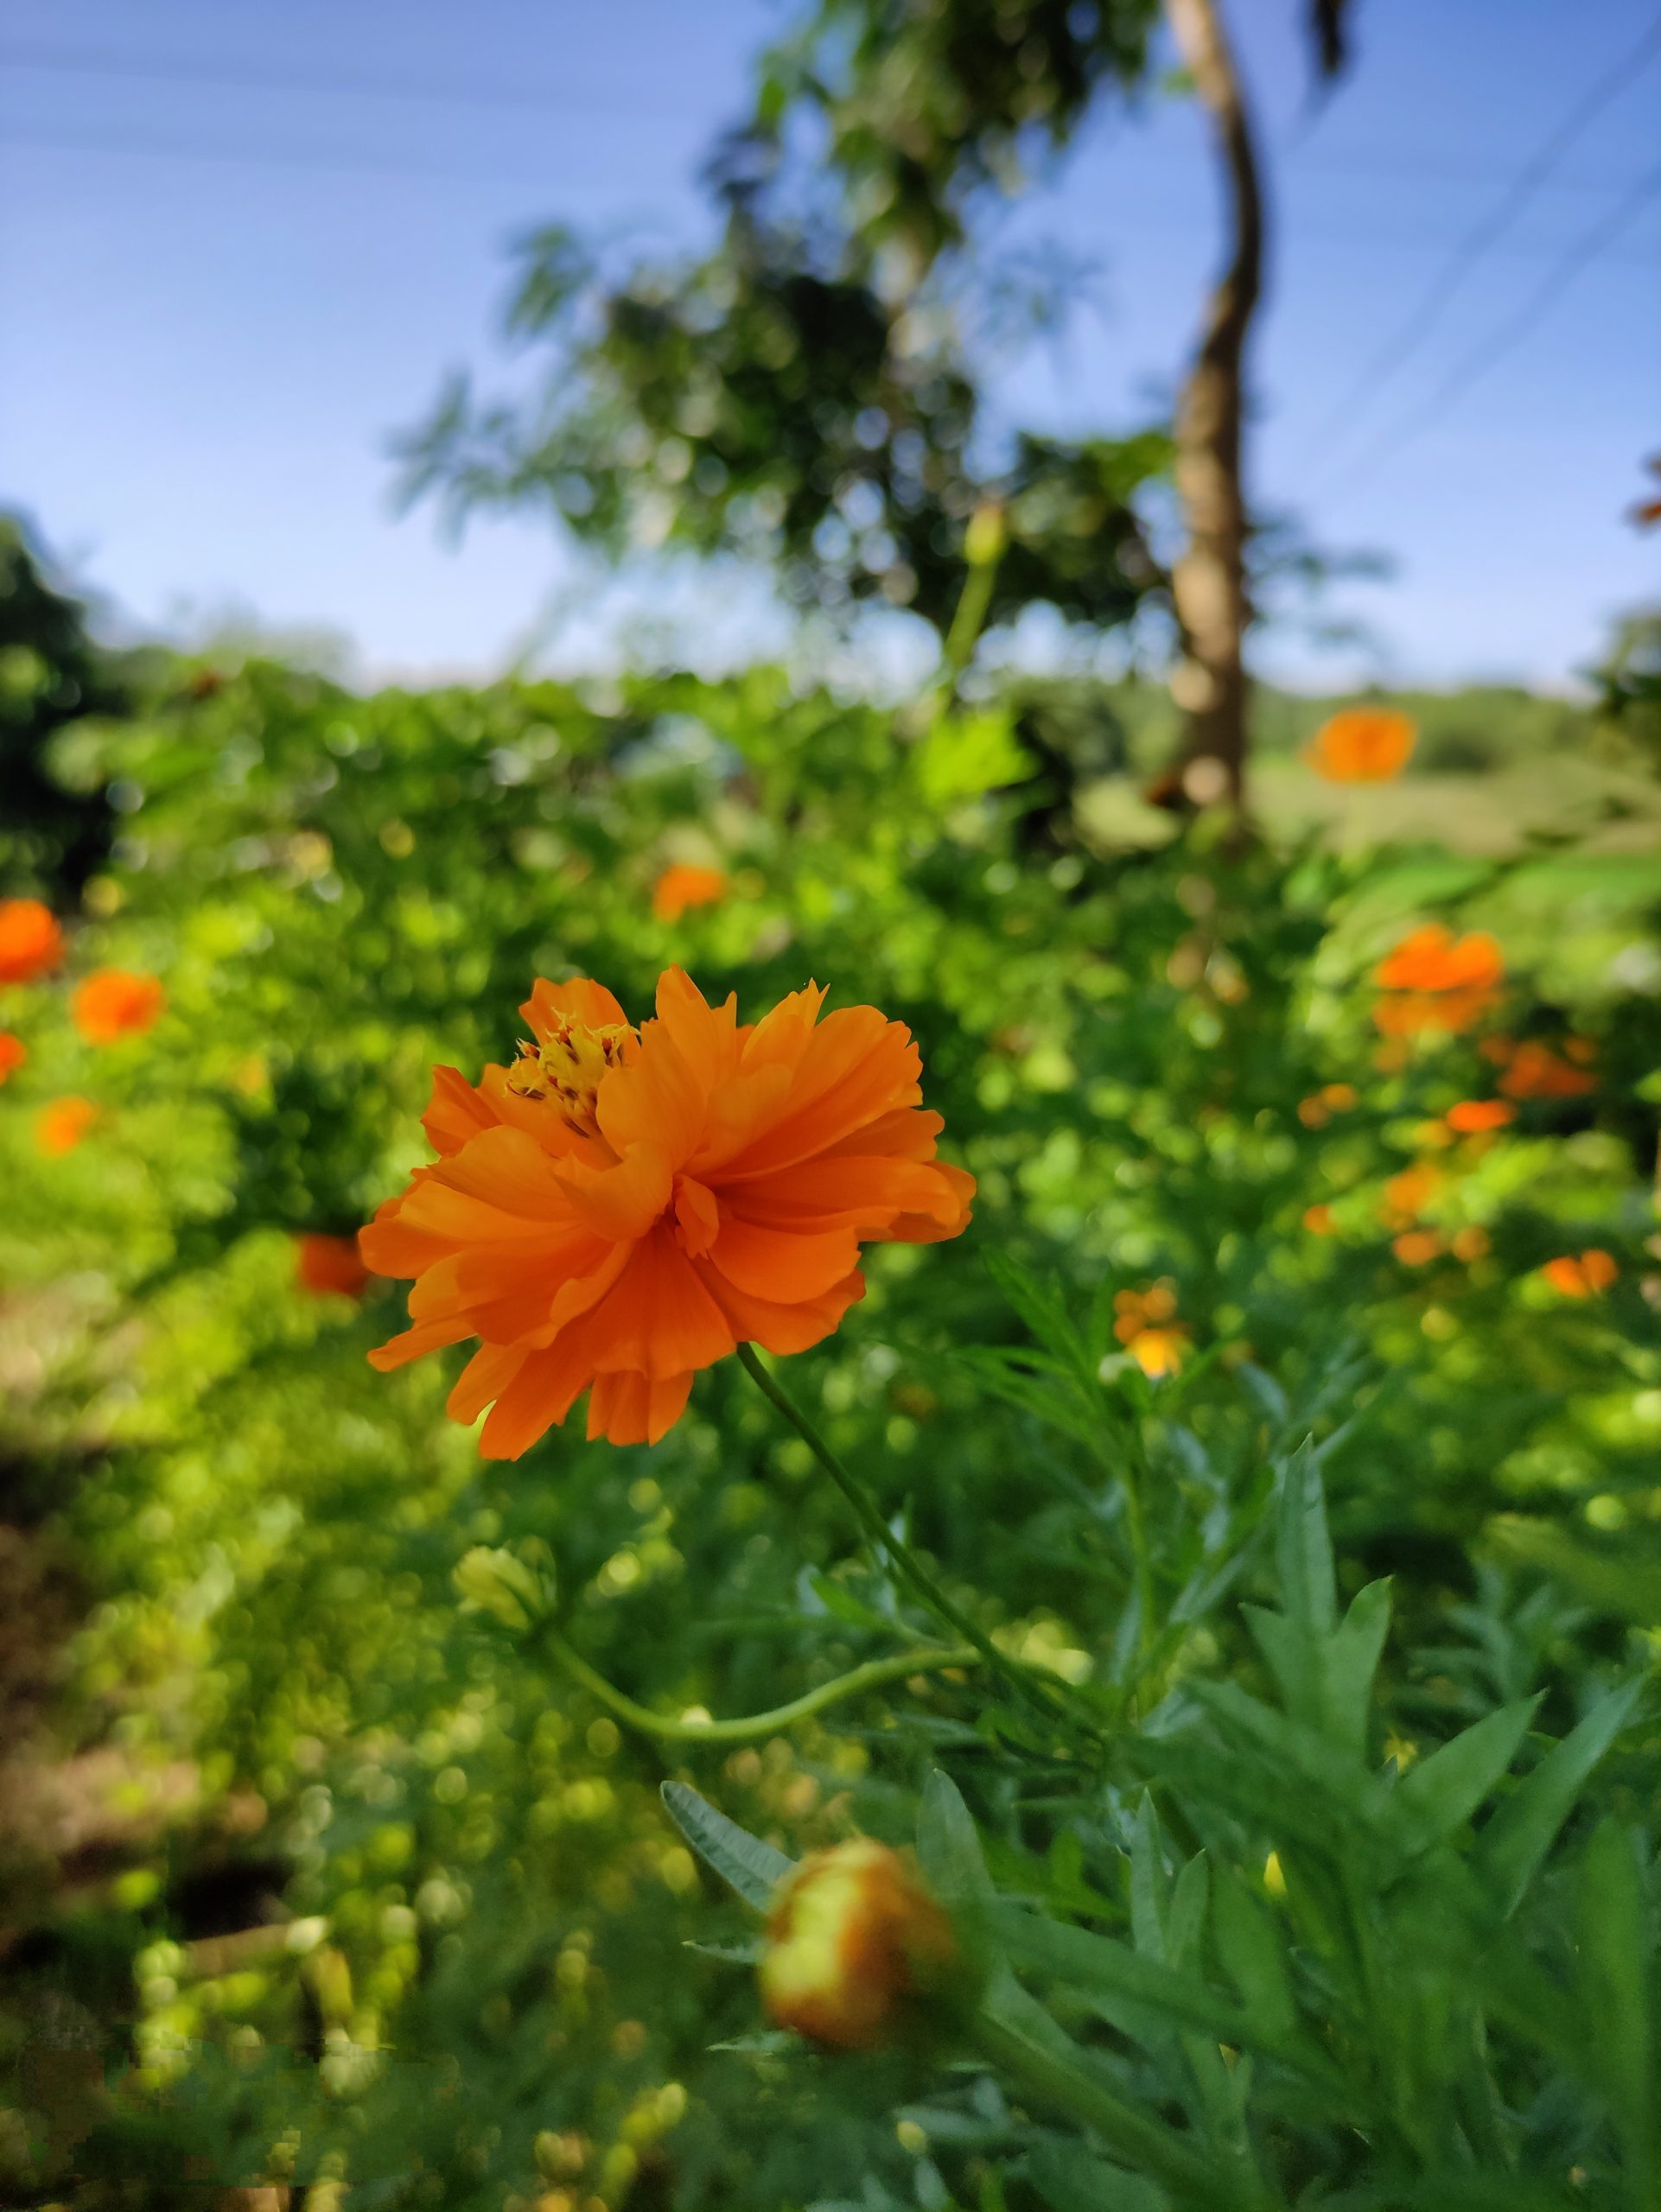 Flower in the Garden